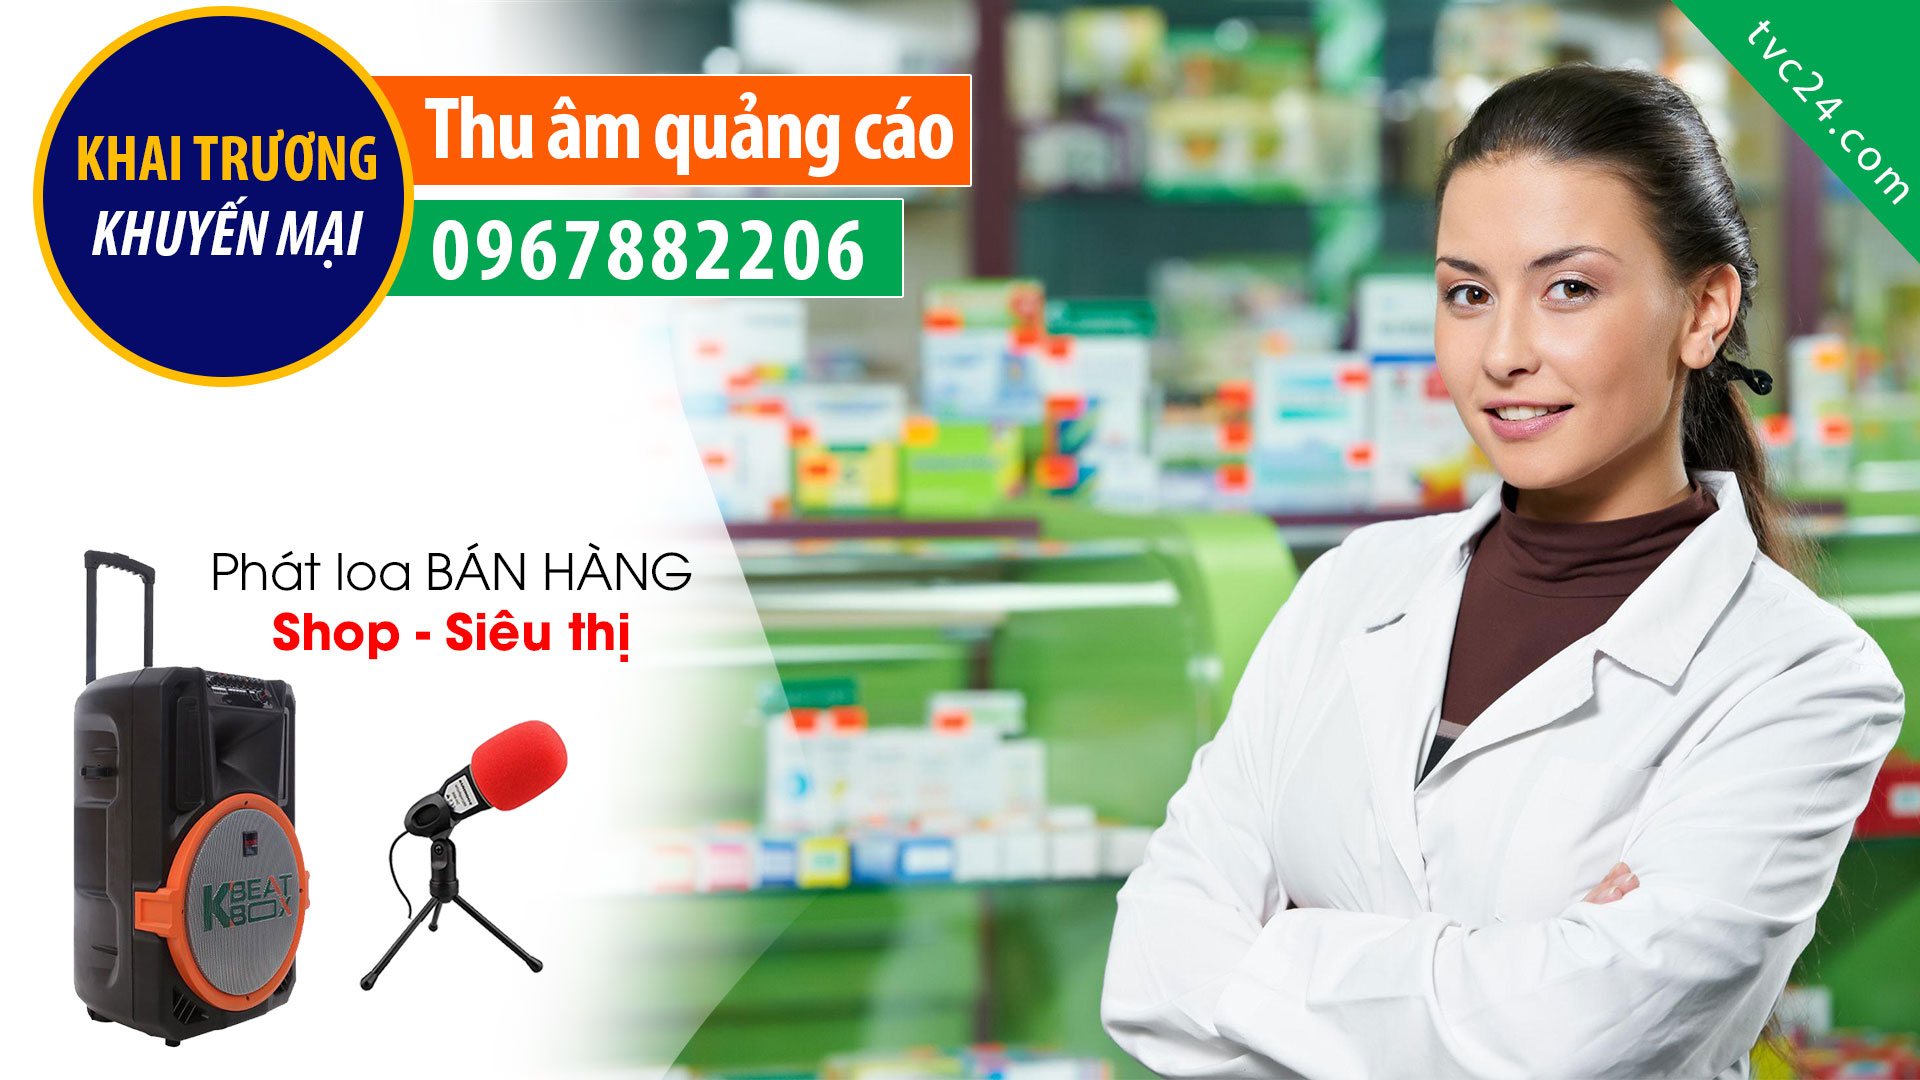 Thu âm quảng cáo khai trương quầy thuốc Kiên Thư TVC24 đọc Khuyến mại